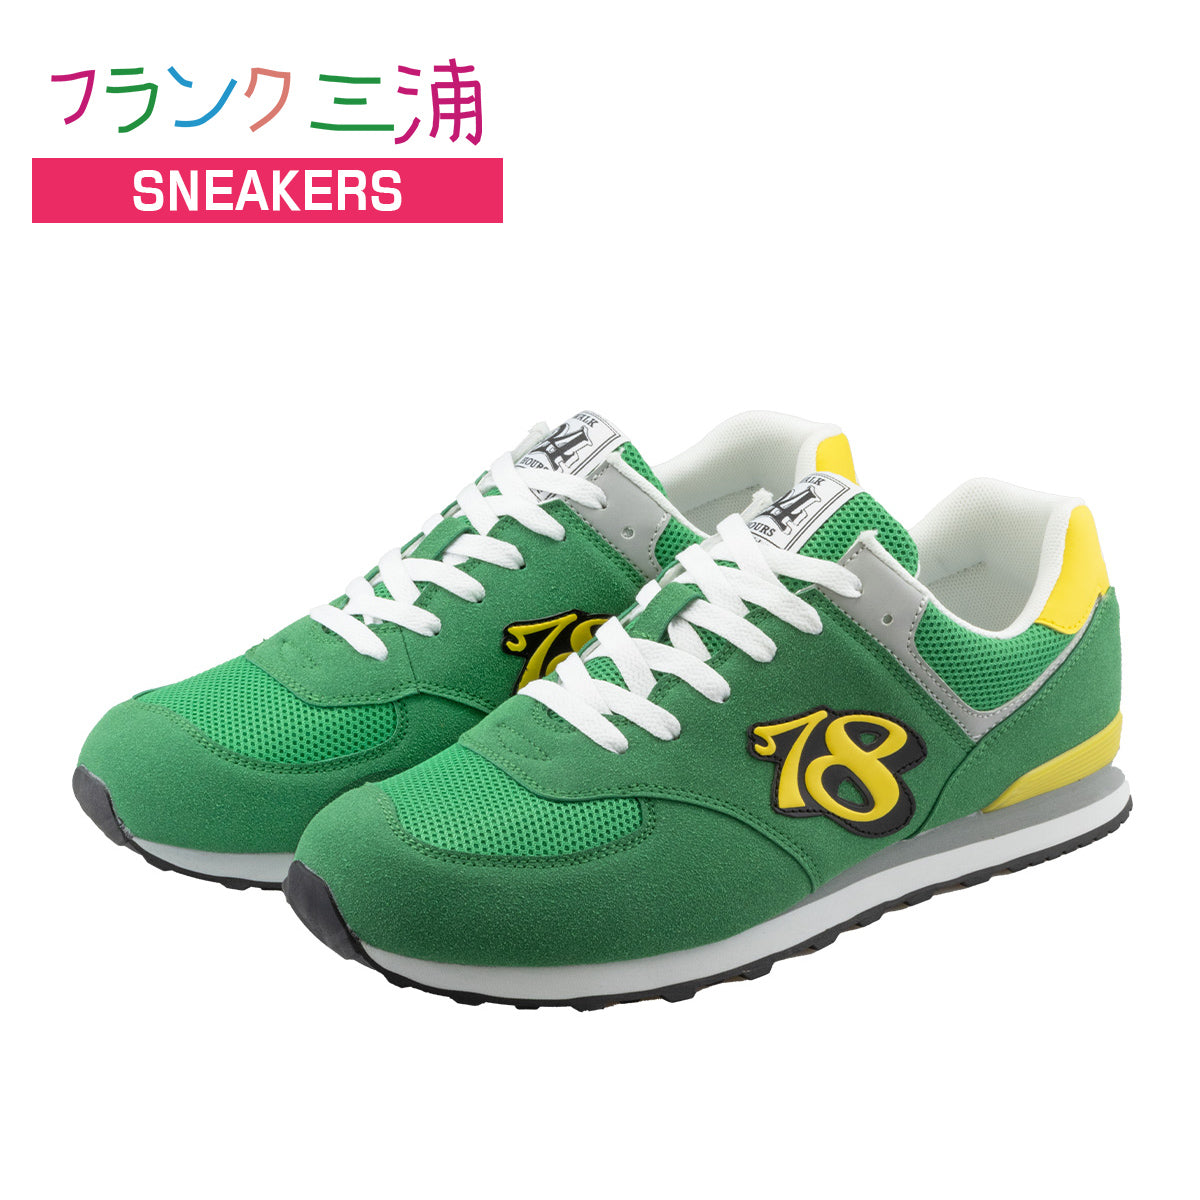 フランク三浦 スニーカー 靴 フットウェア footwear グリーン イエロー FM31-GRYE